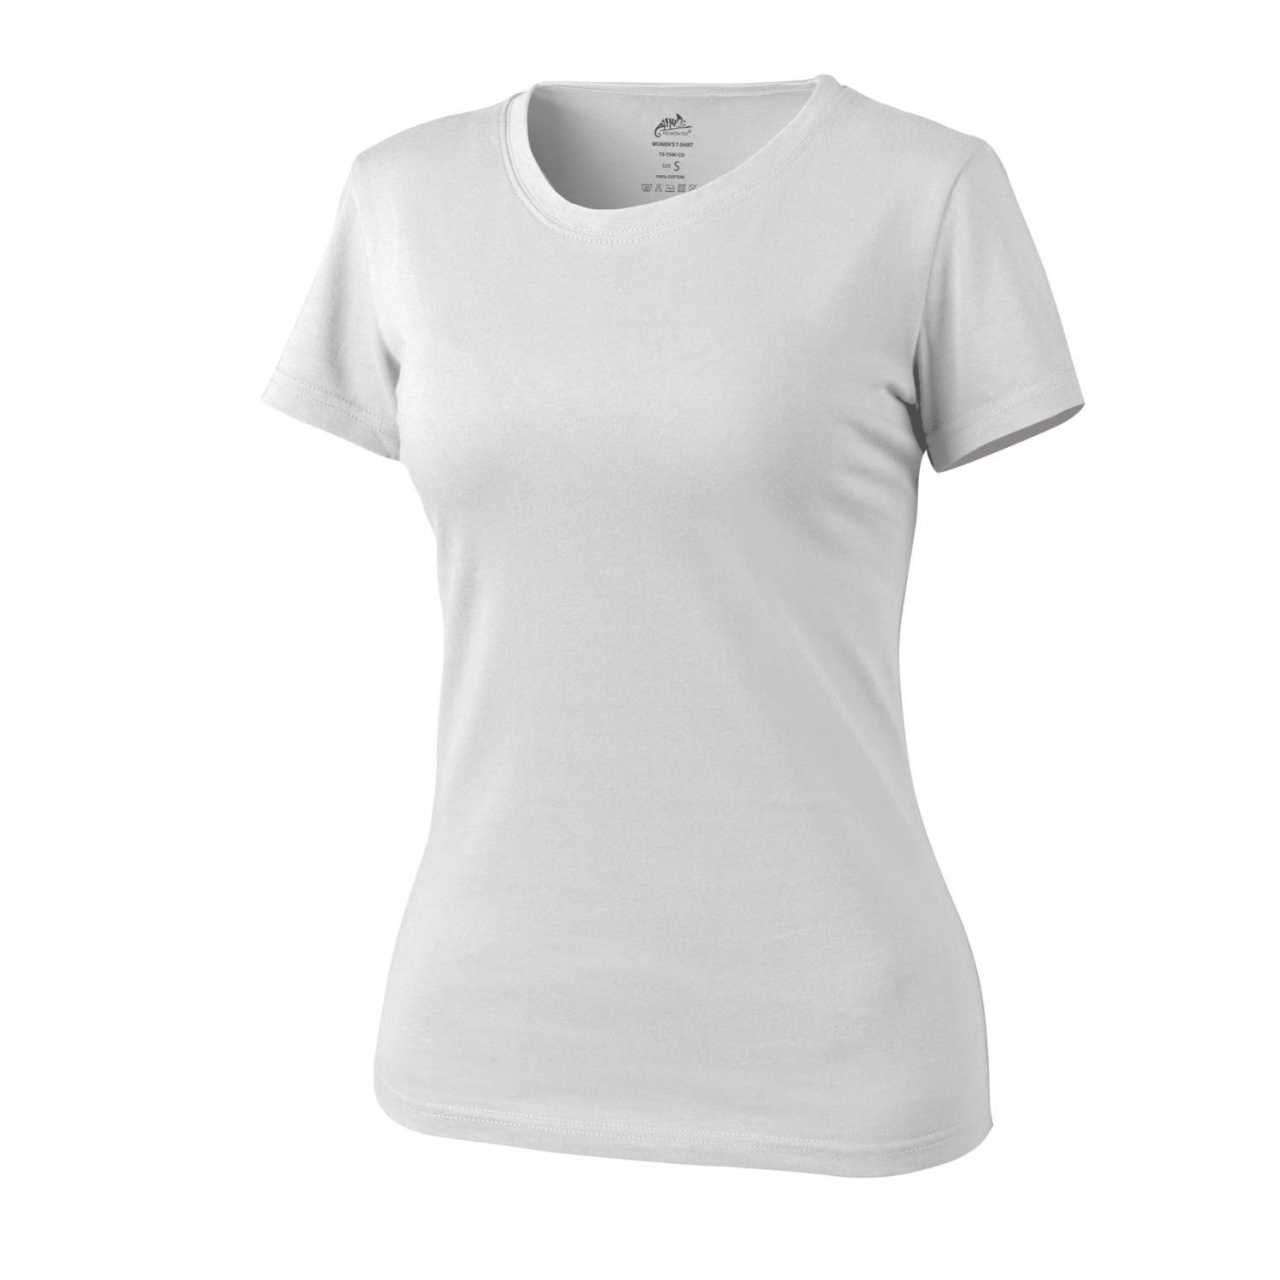 Tričko dámské Helikon Womens Shirt - bílé, M